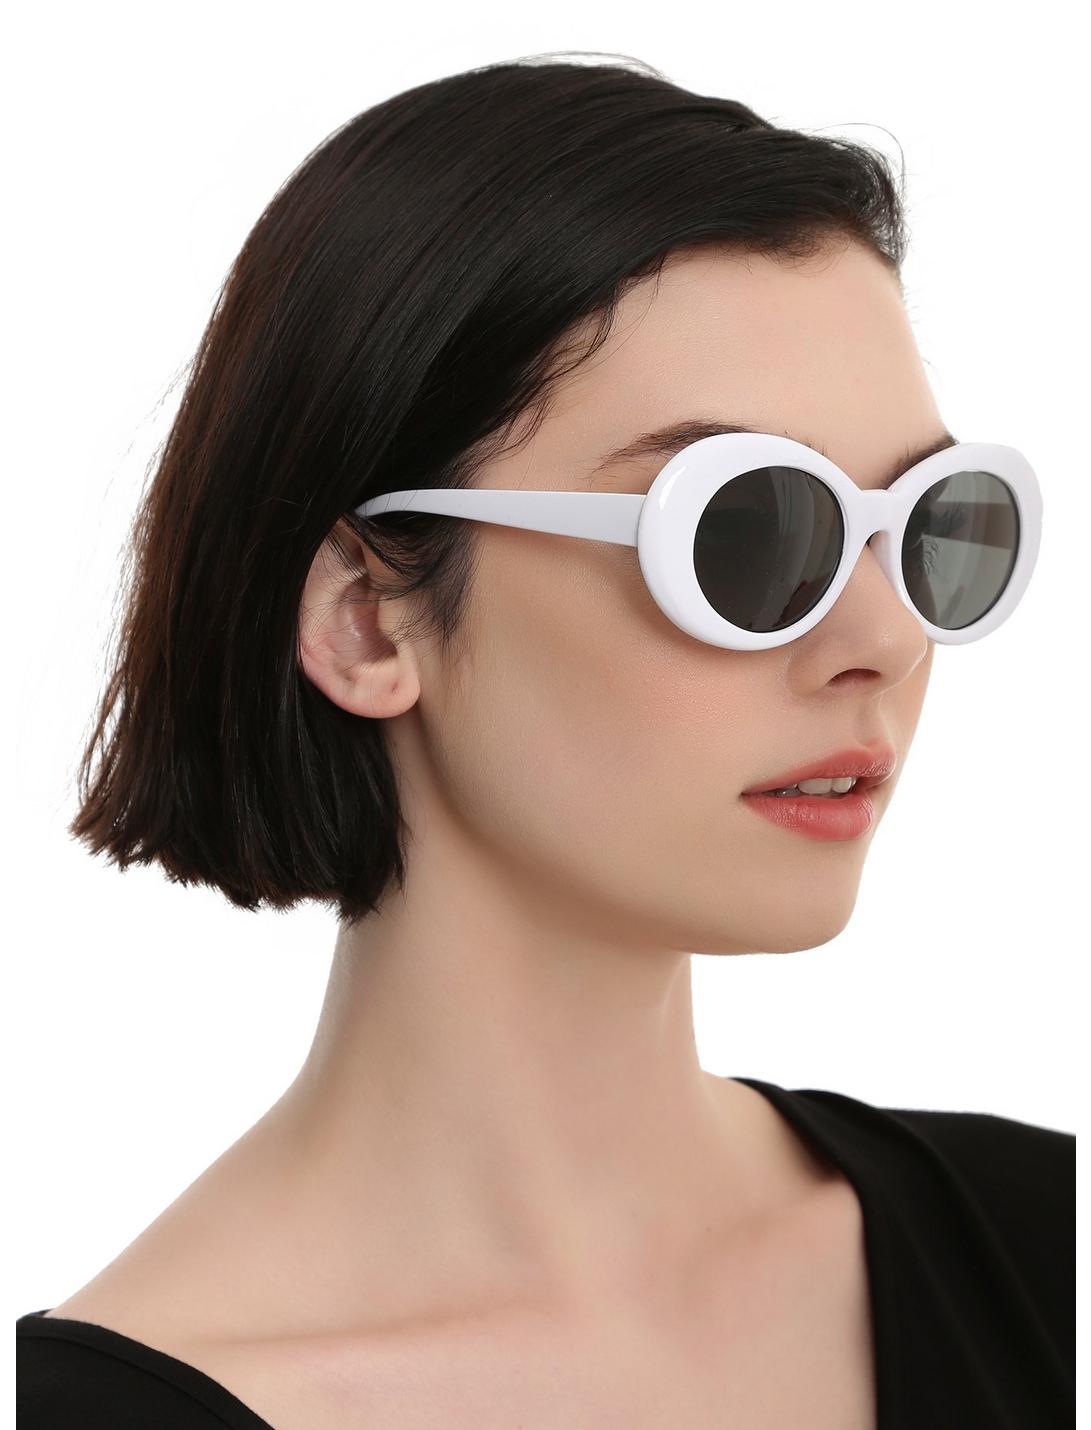 Lens Options for Retro Sunglasses